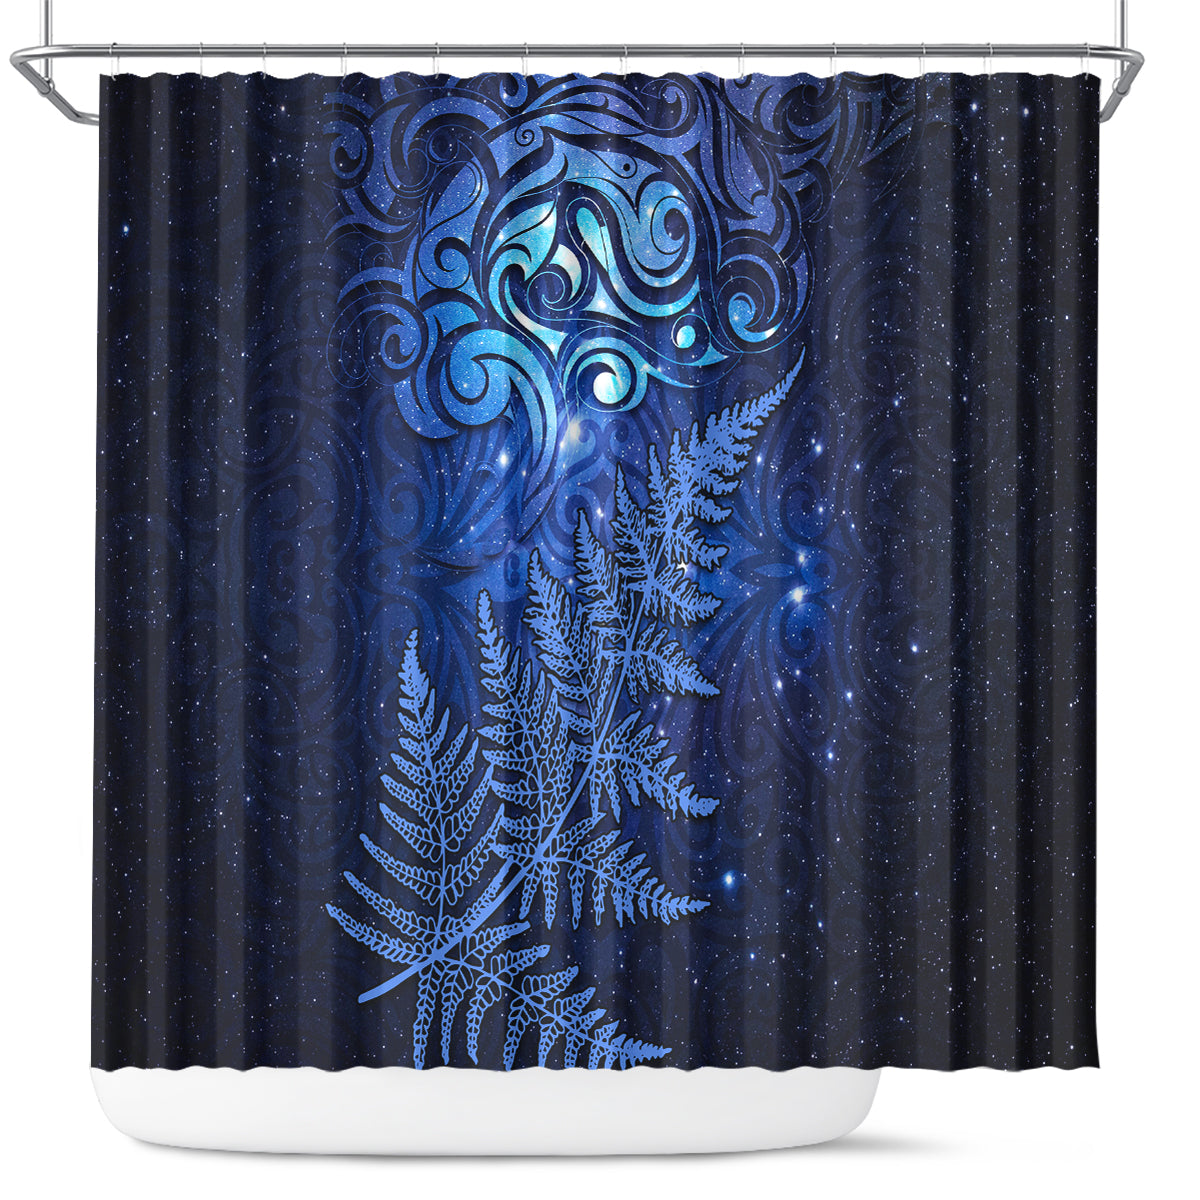 New Zealand Matariki Shower Curtain Maori Pattern and Silver Fern